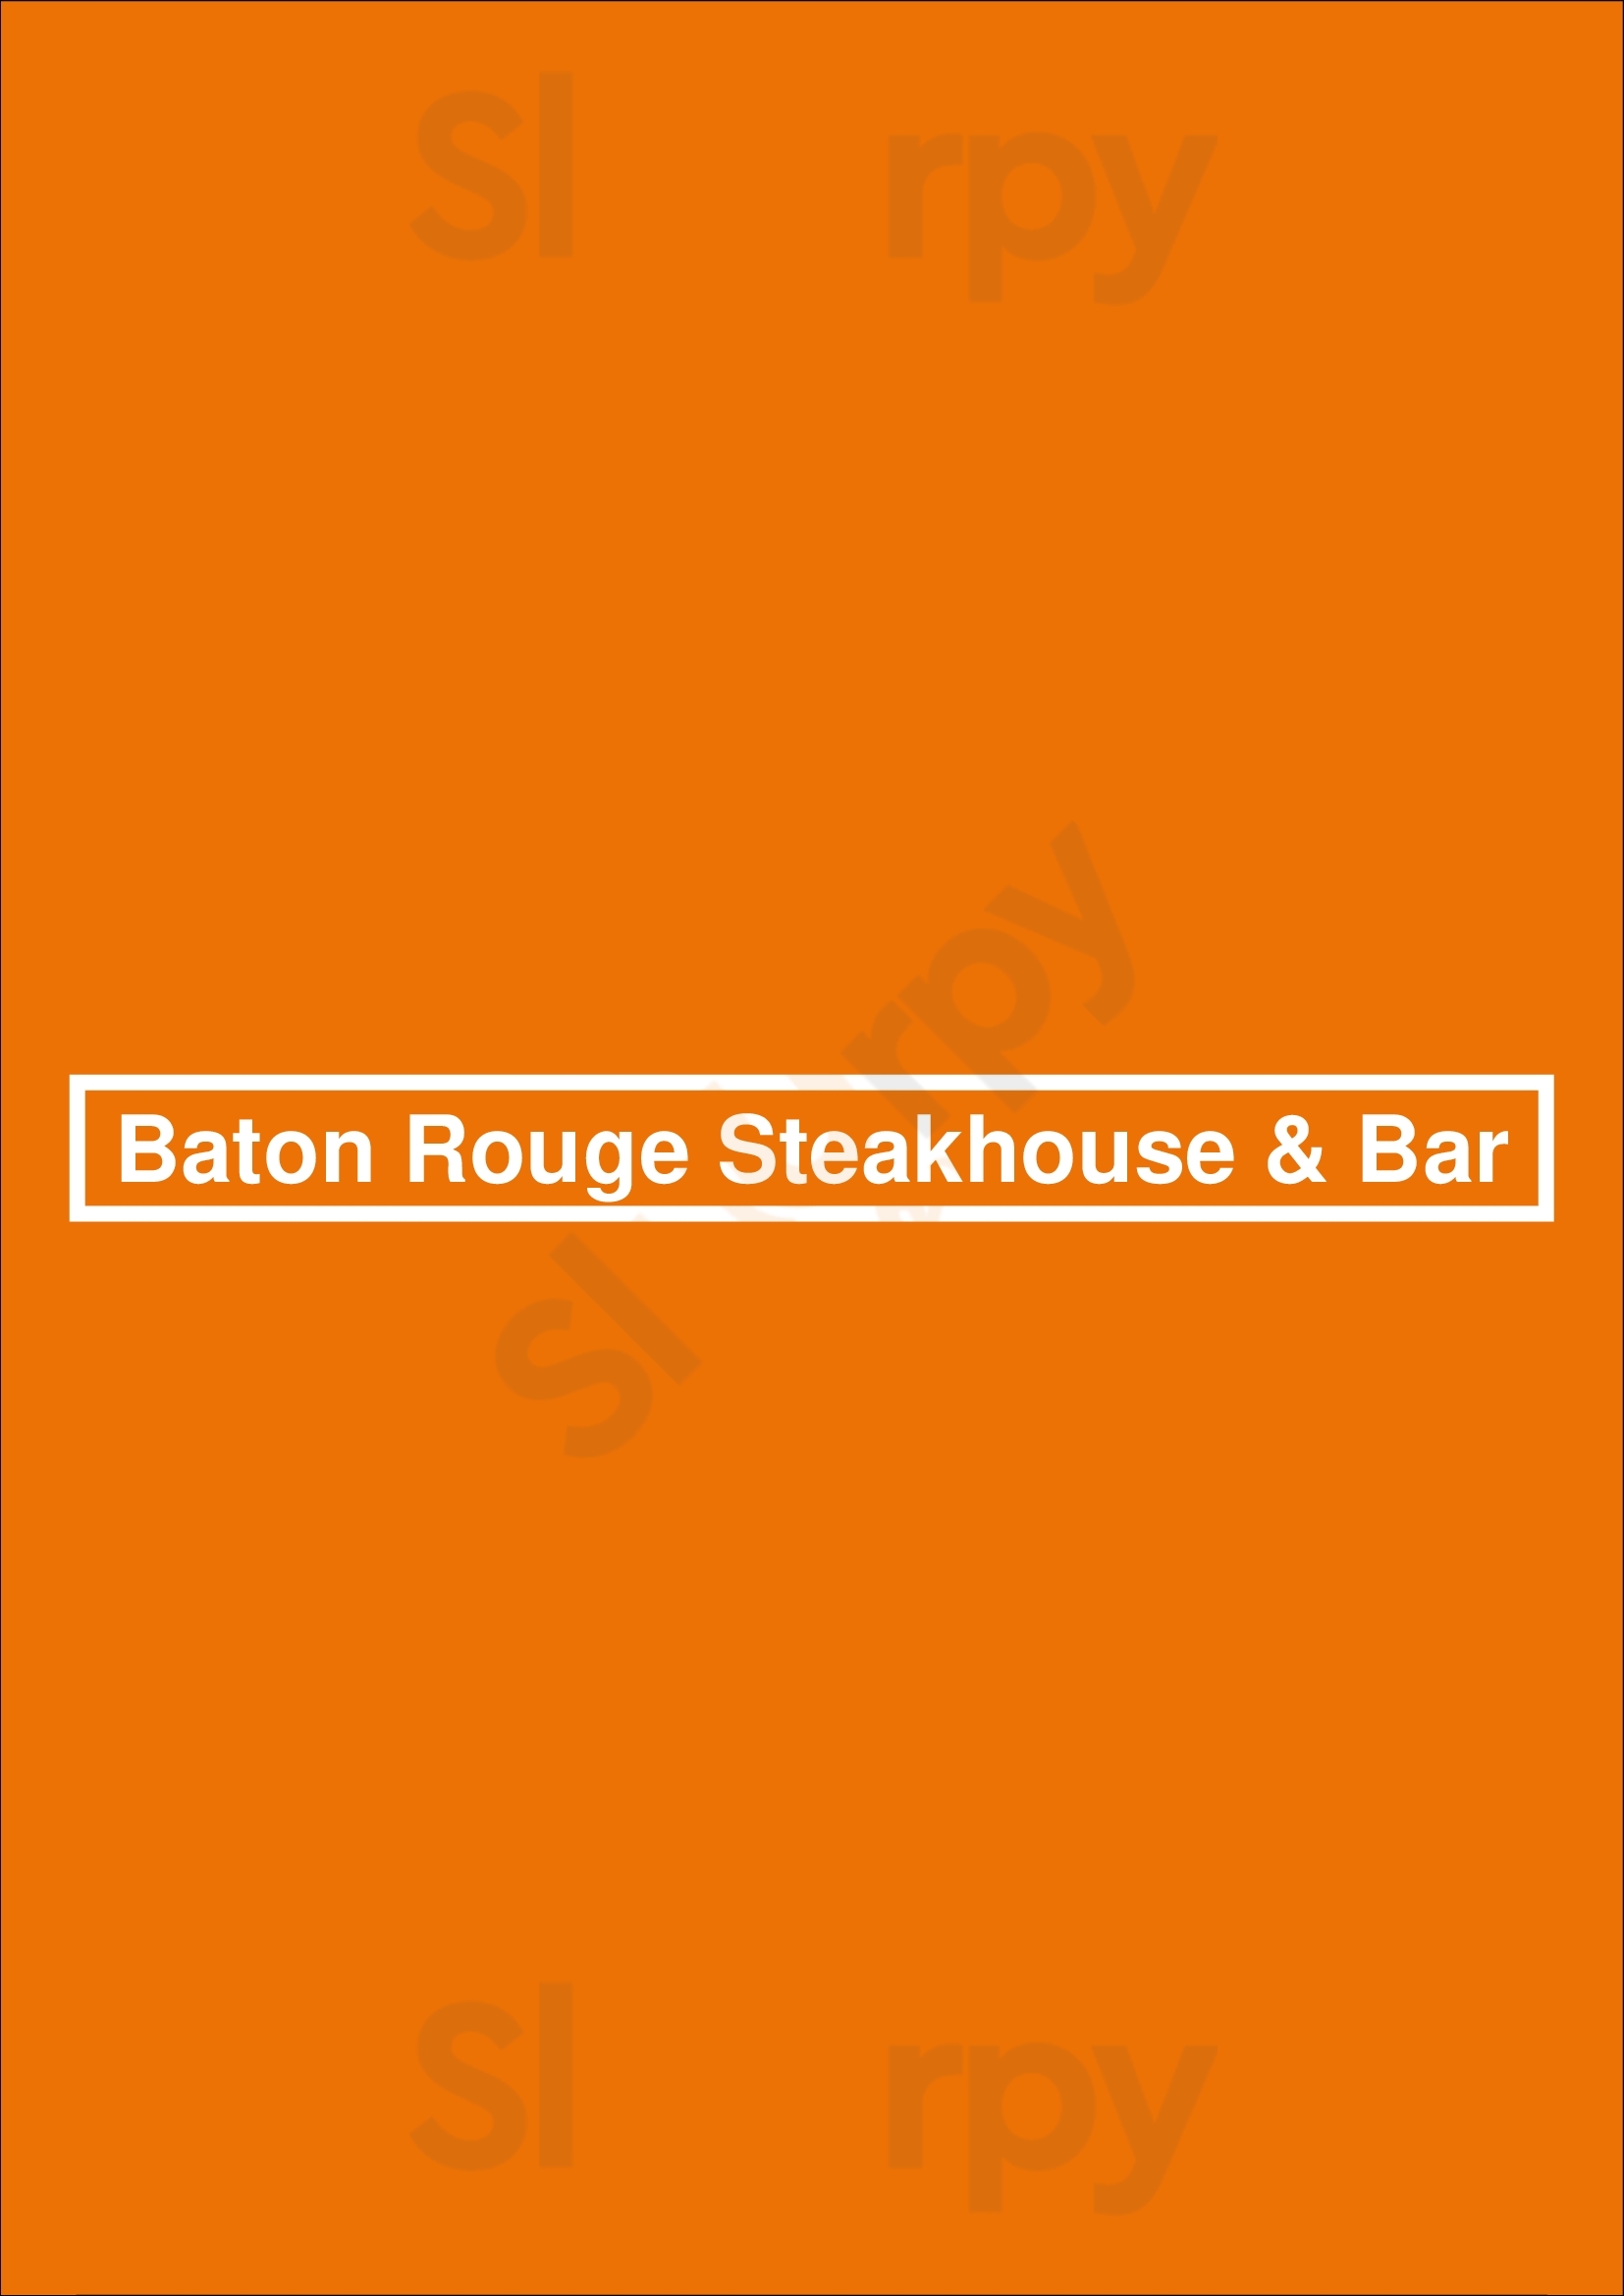 Baton Rouge Grillhouse & Bar Whitby Menu - 1